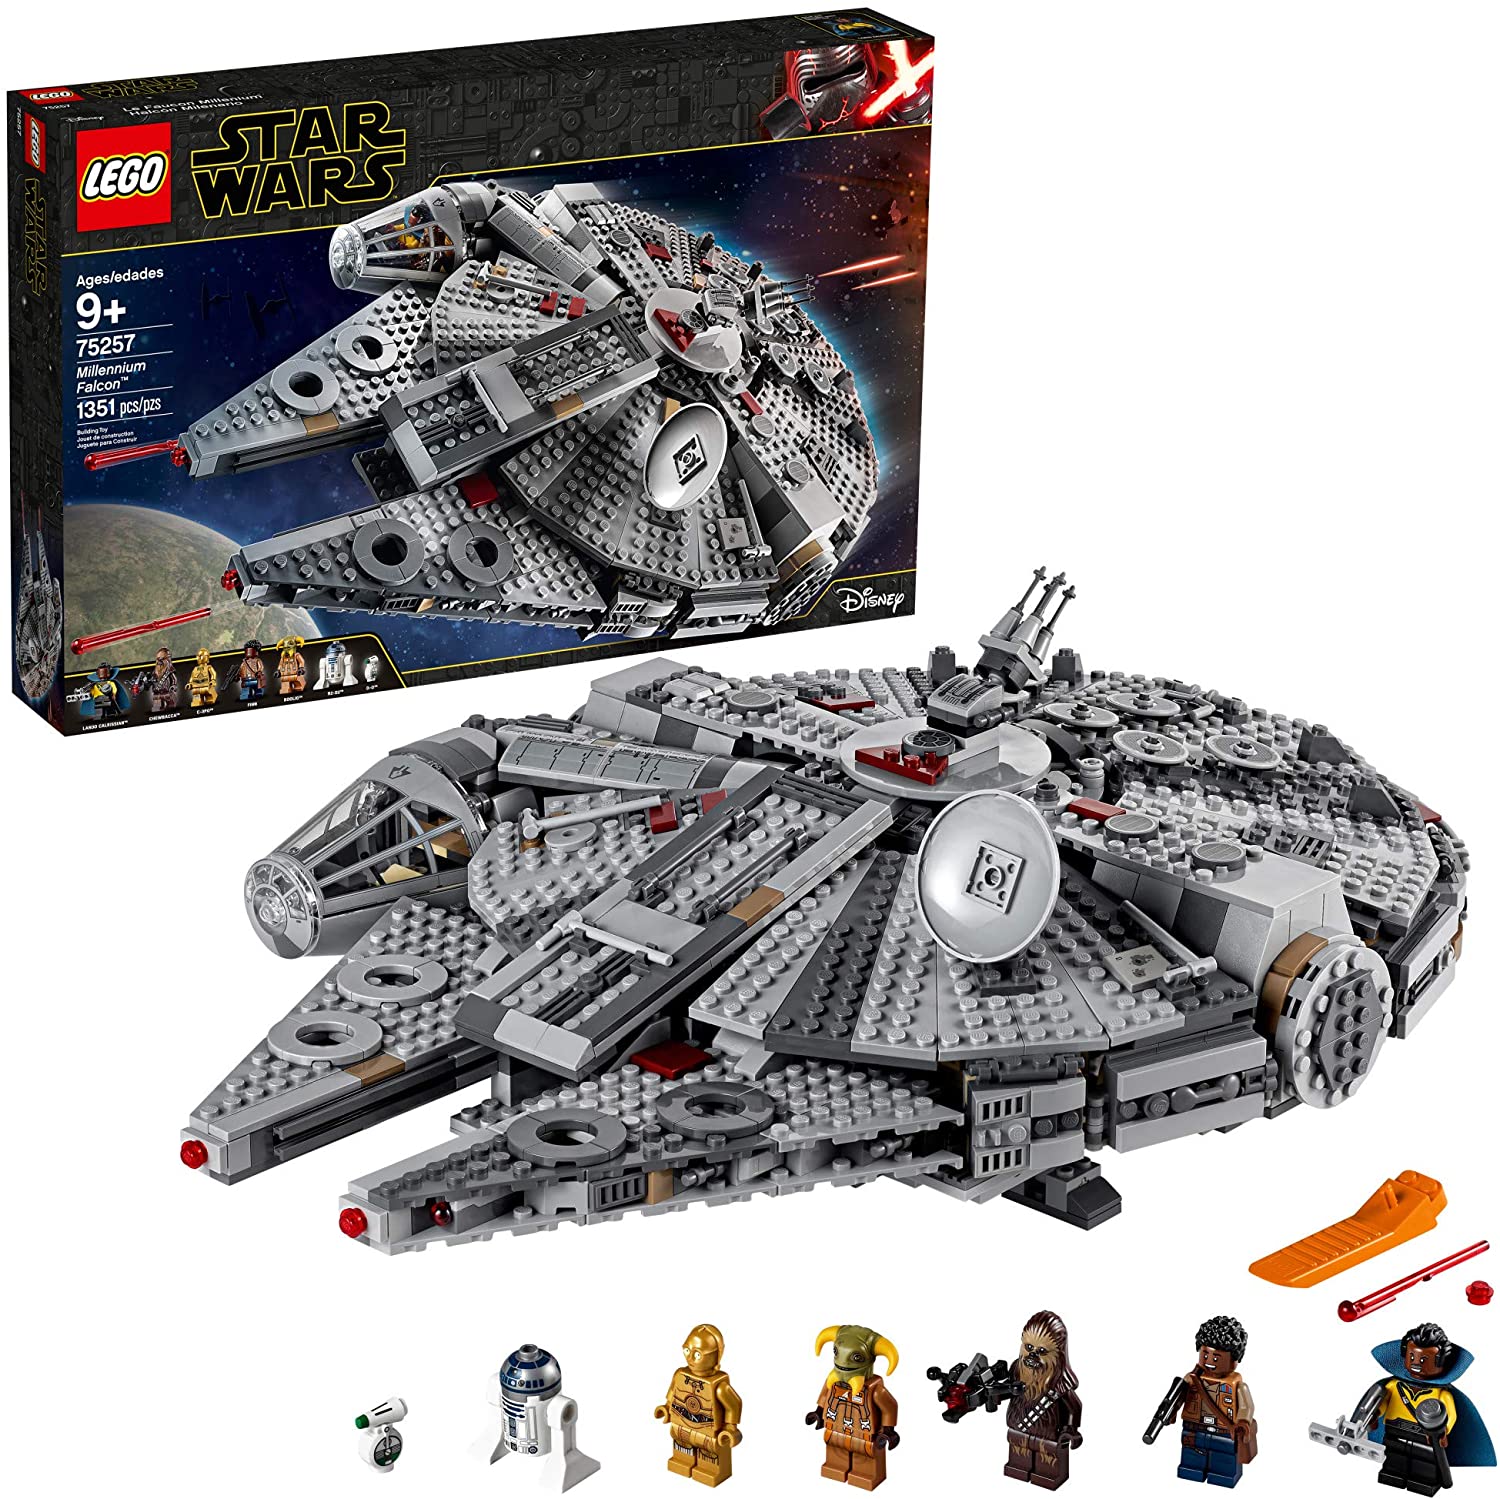 LEGO Star Wars Millennium Falcon Set 75257